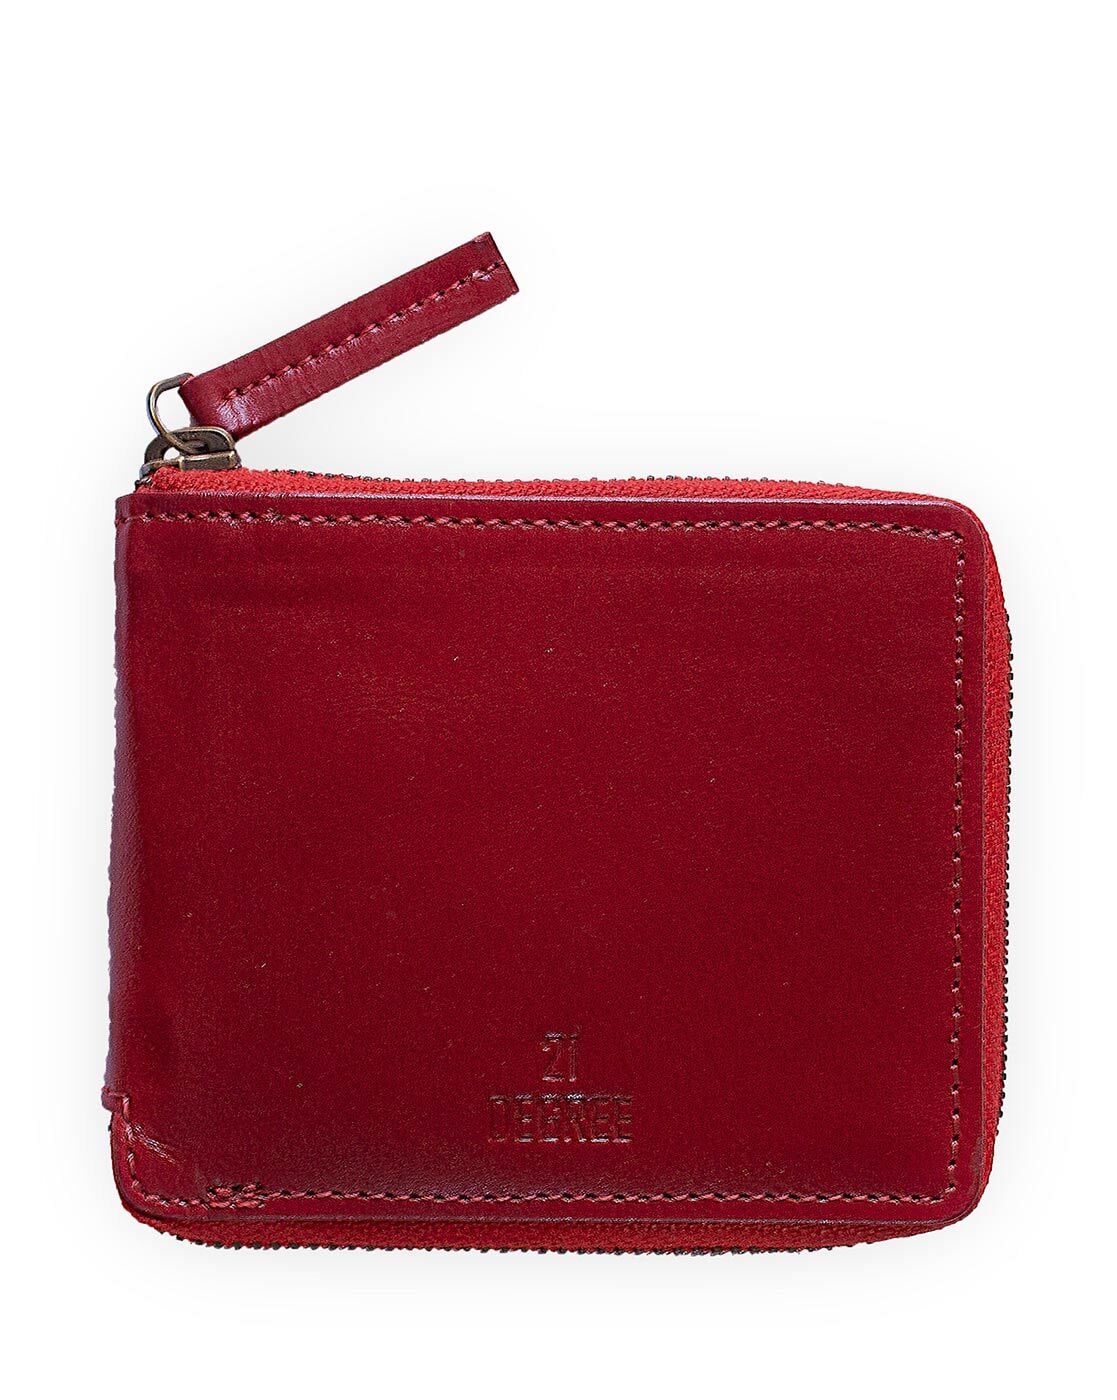 Personalized Women's Leather Wallet/Clutch – Urban Kiosk